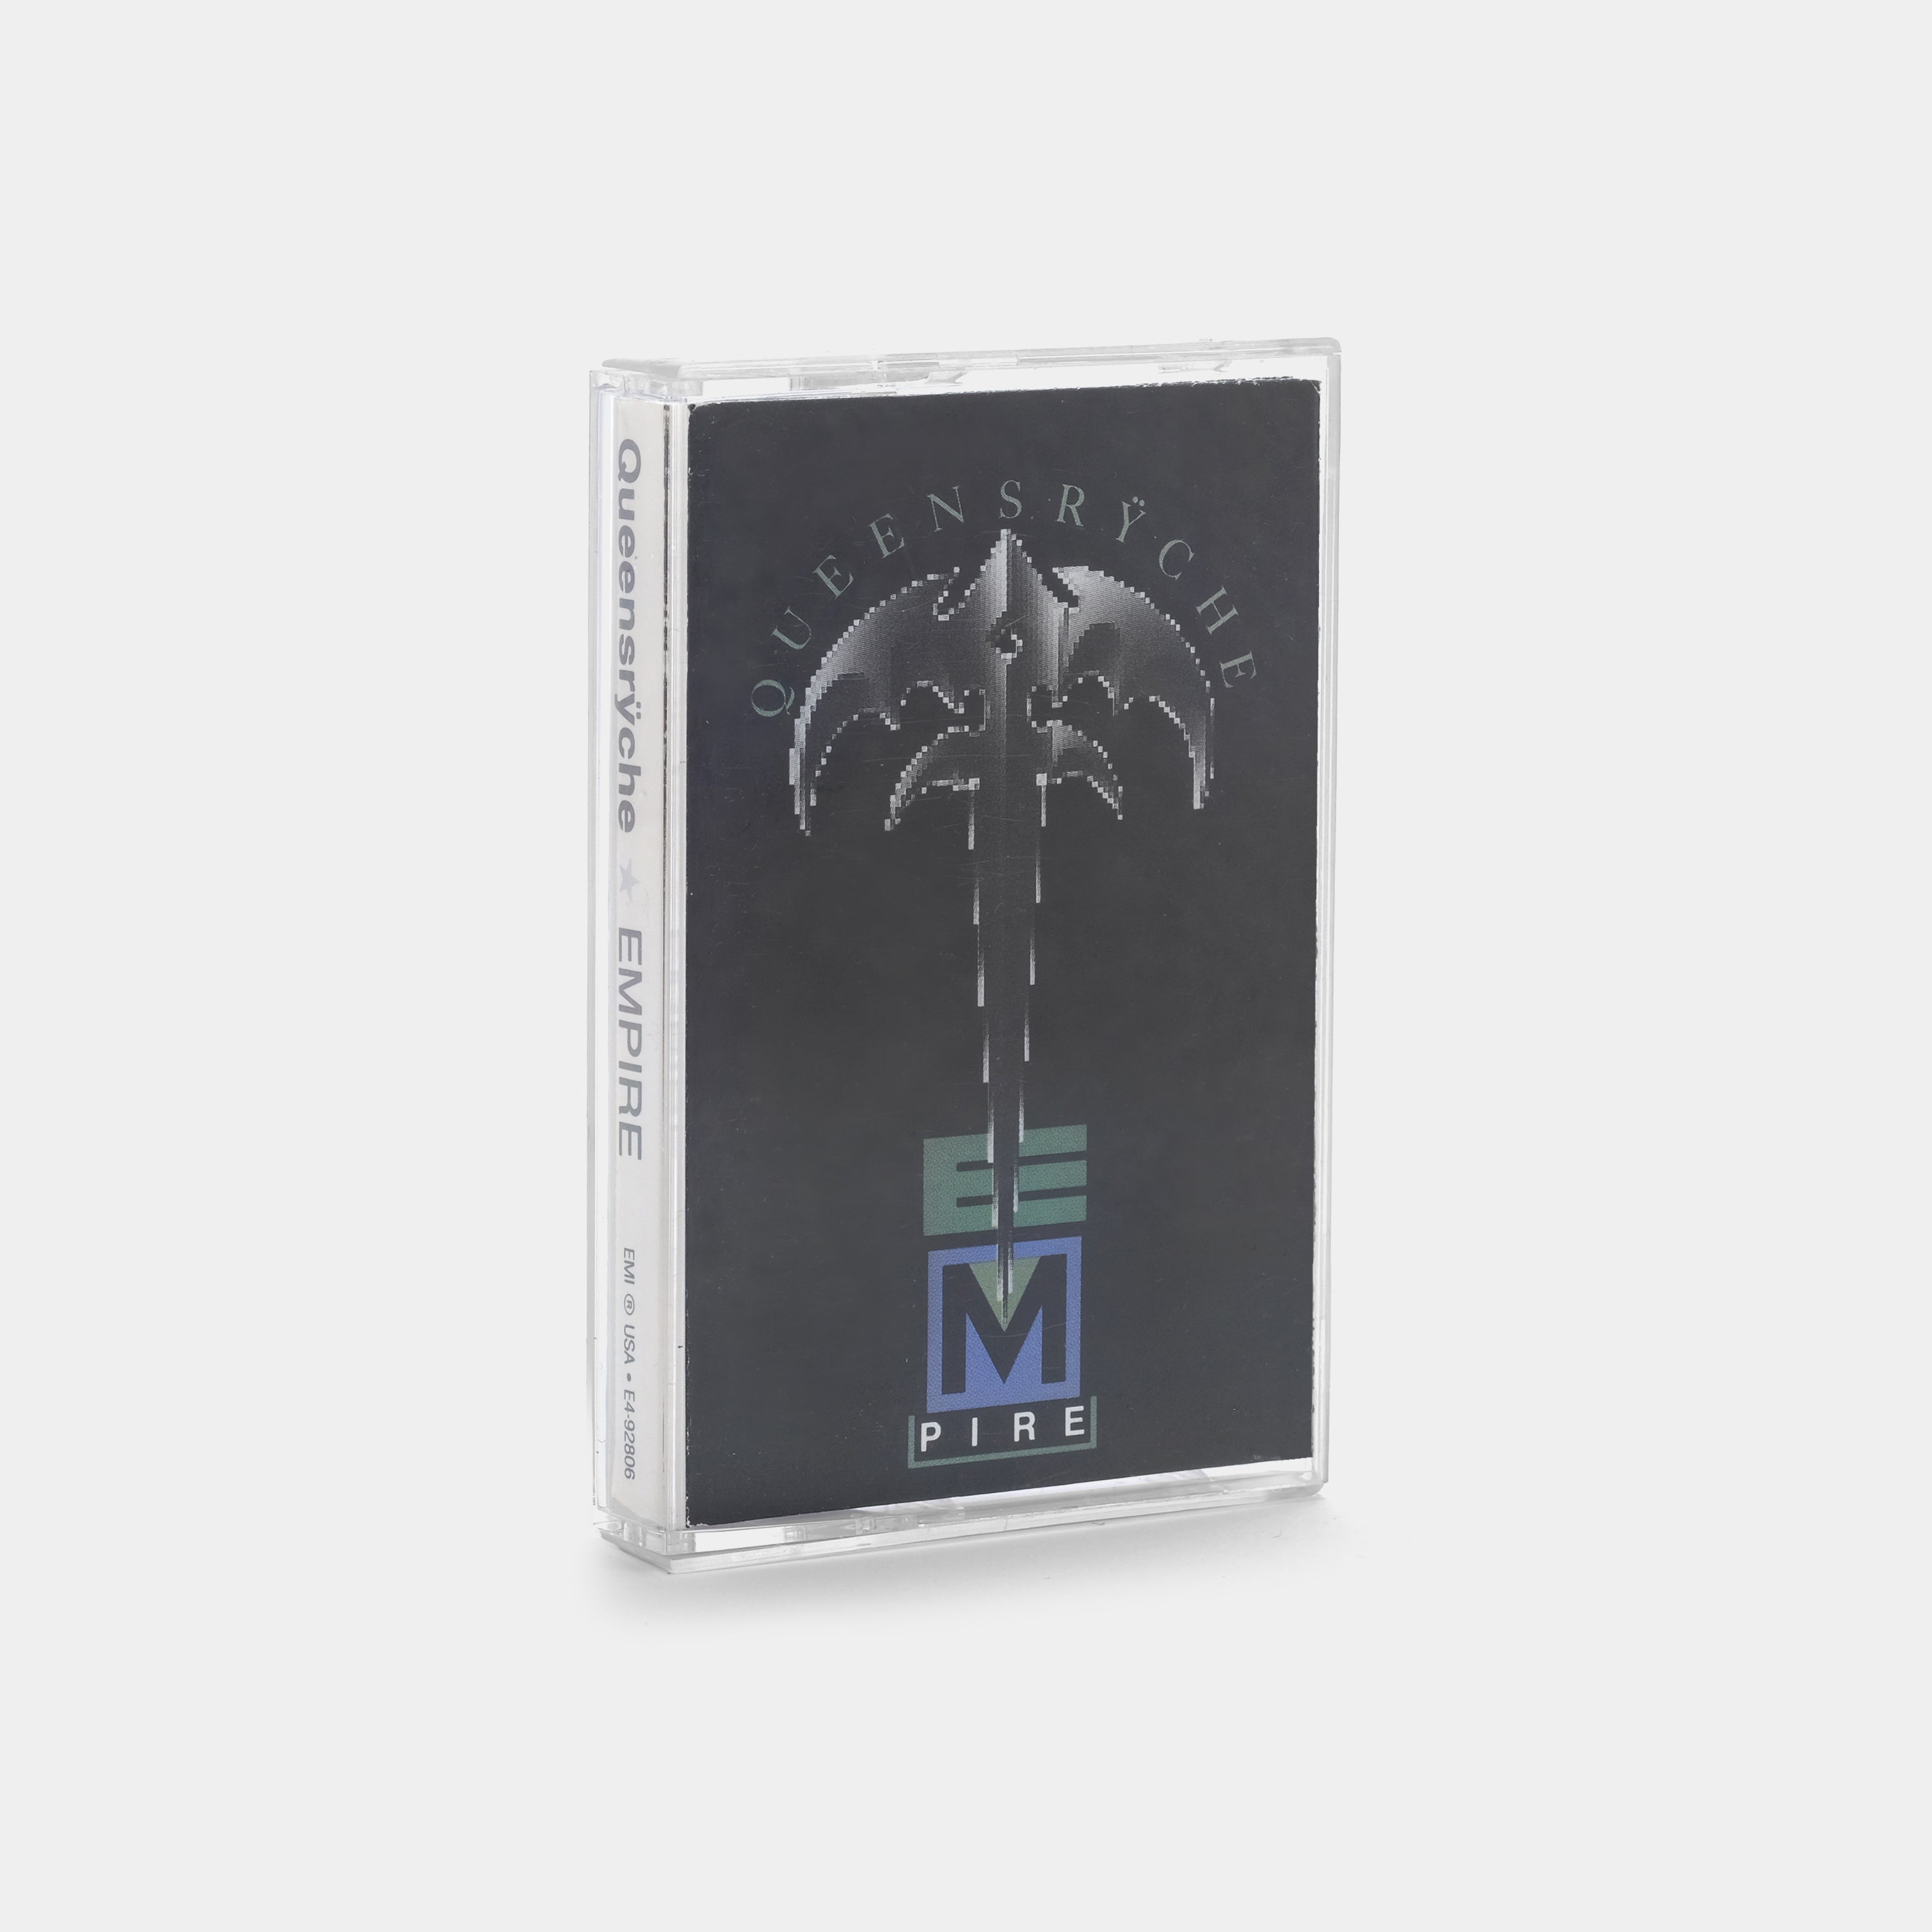 Queensrÿche - Empire Cassette Tape